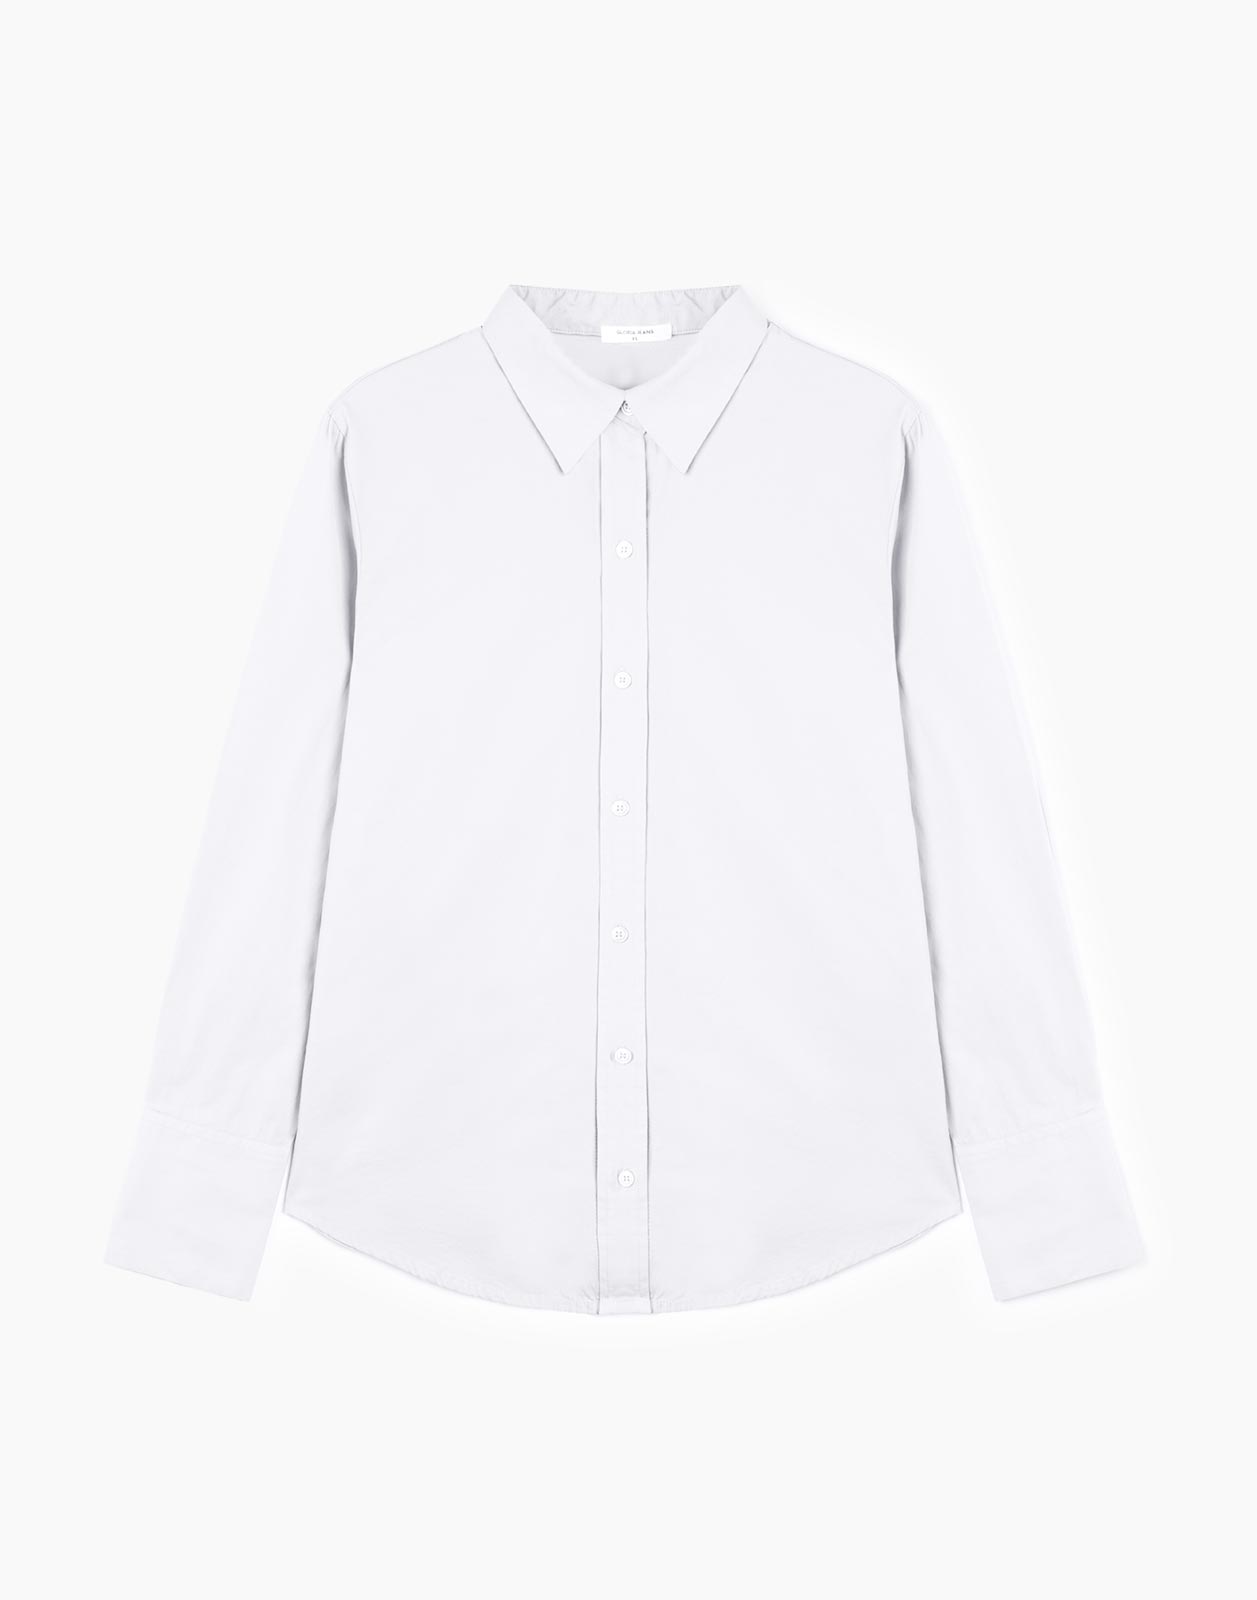 Рубашка женская Gloria Jeans GSU000999 белая XS (38-40)